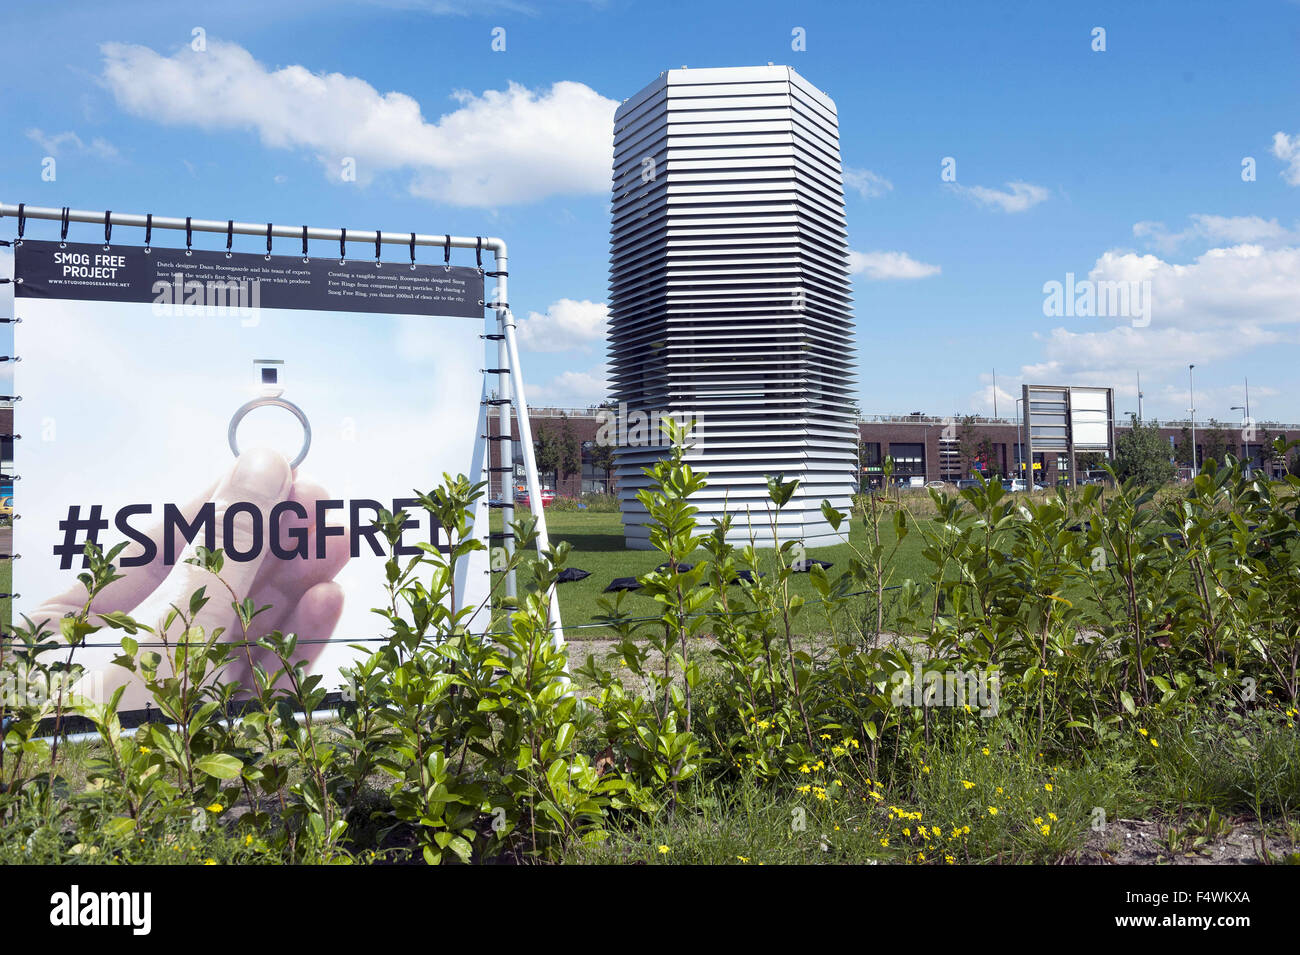 El 10 de septiembre, 2015 - Rotterdam, Países Bajos, Holanda - El famoso  diseñador internacional holandés Daan Roosegaarde lanzó su proyecto libre  Smog en Rotterdam, Países Bajos. El proyecto crea libre smog